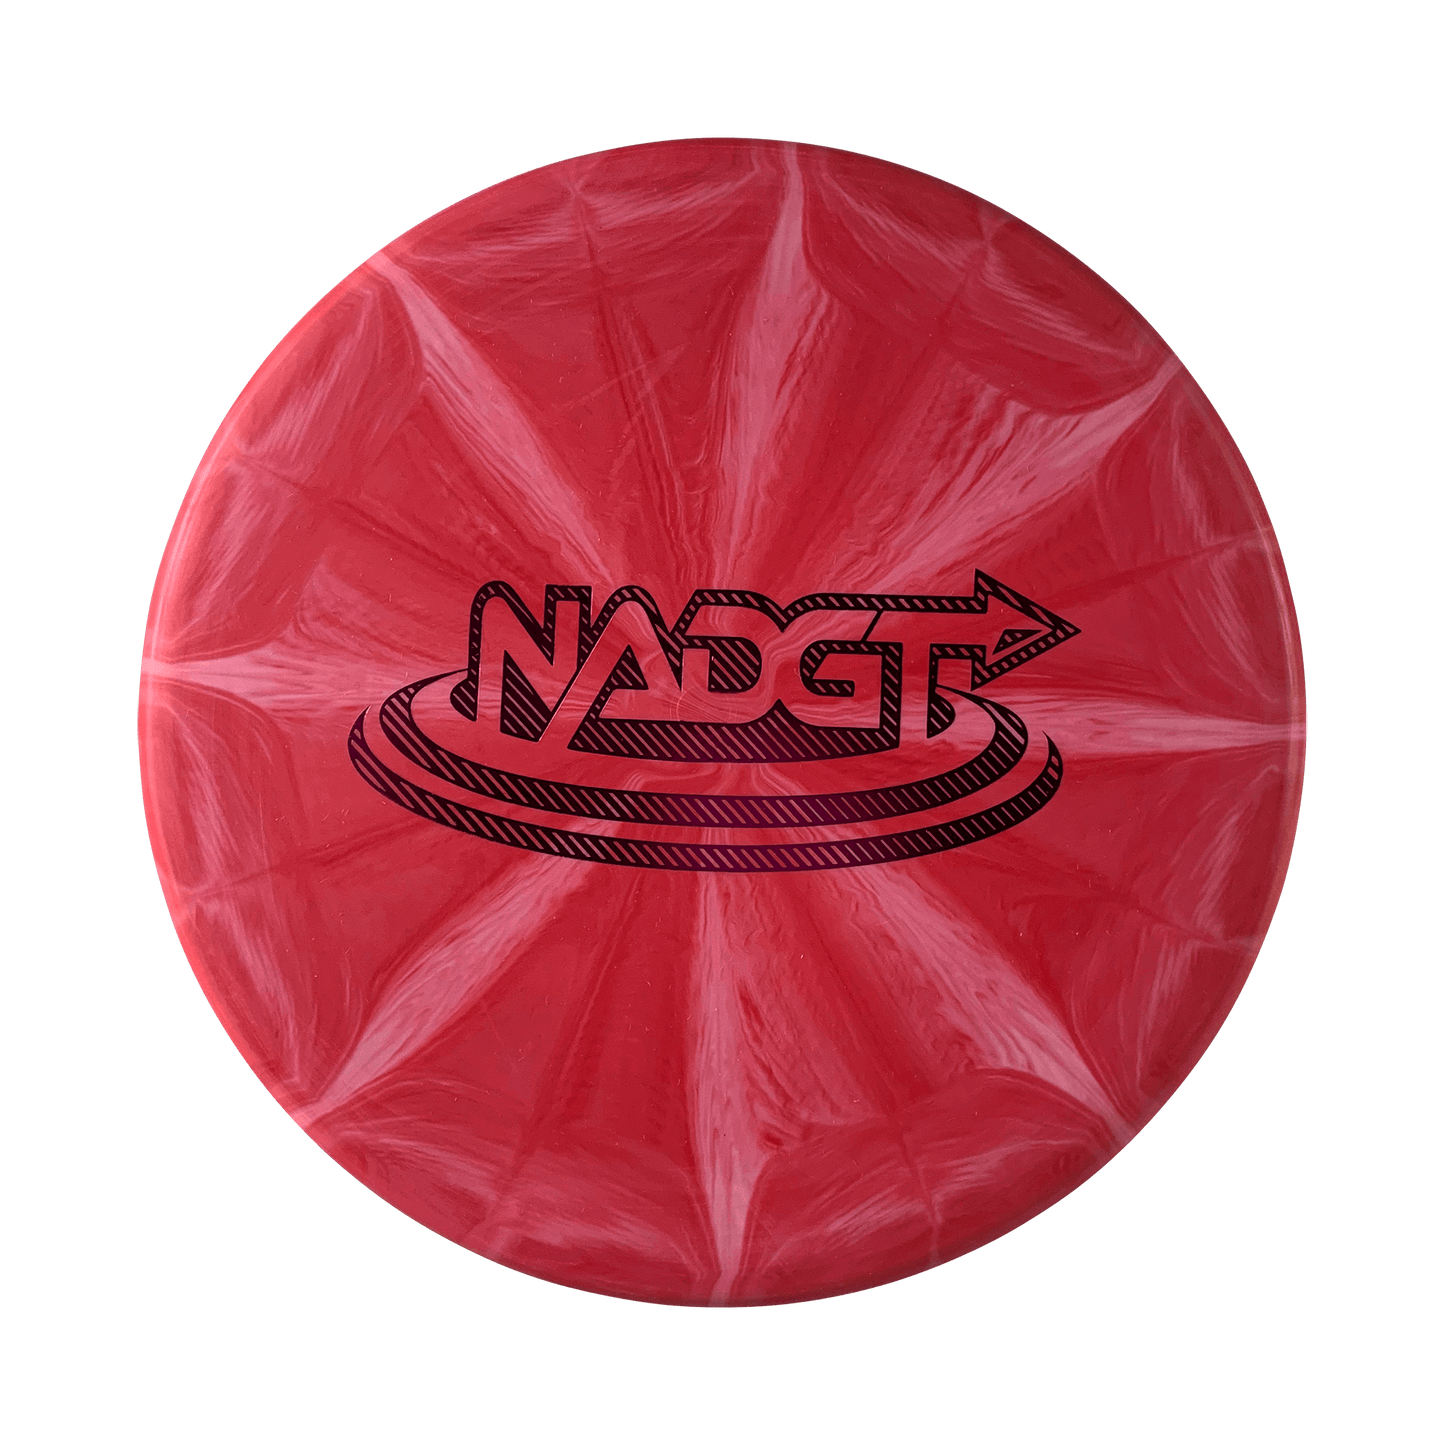 Origio Burst Harp Disc Westside Discs red 173 